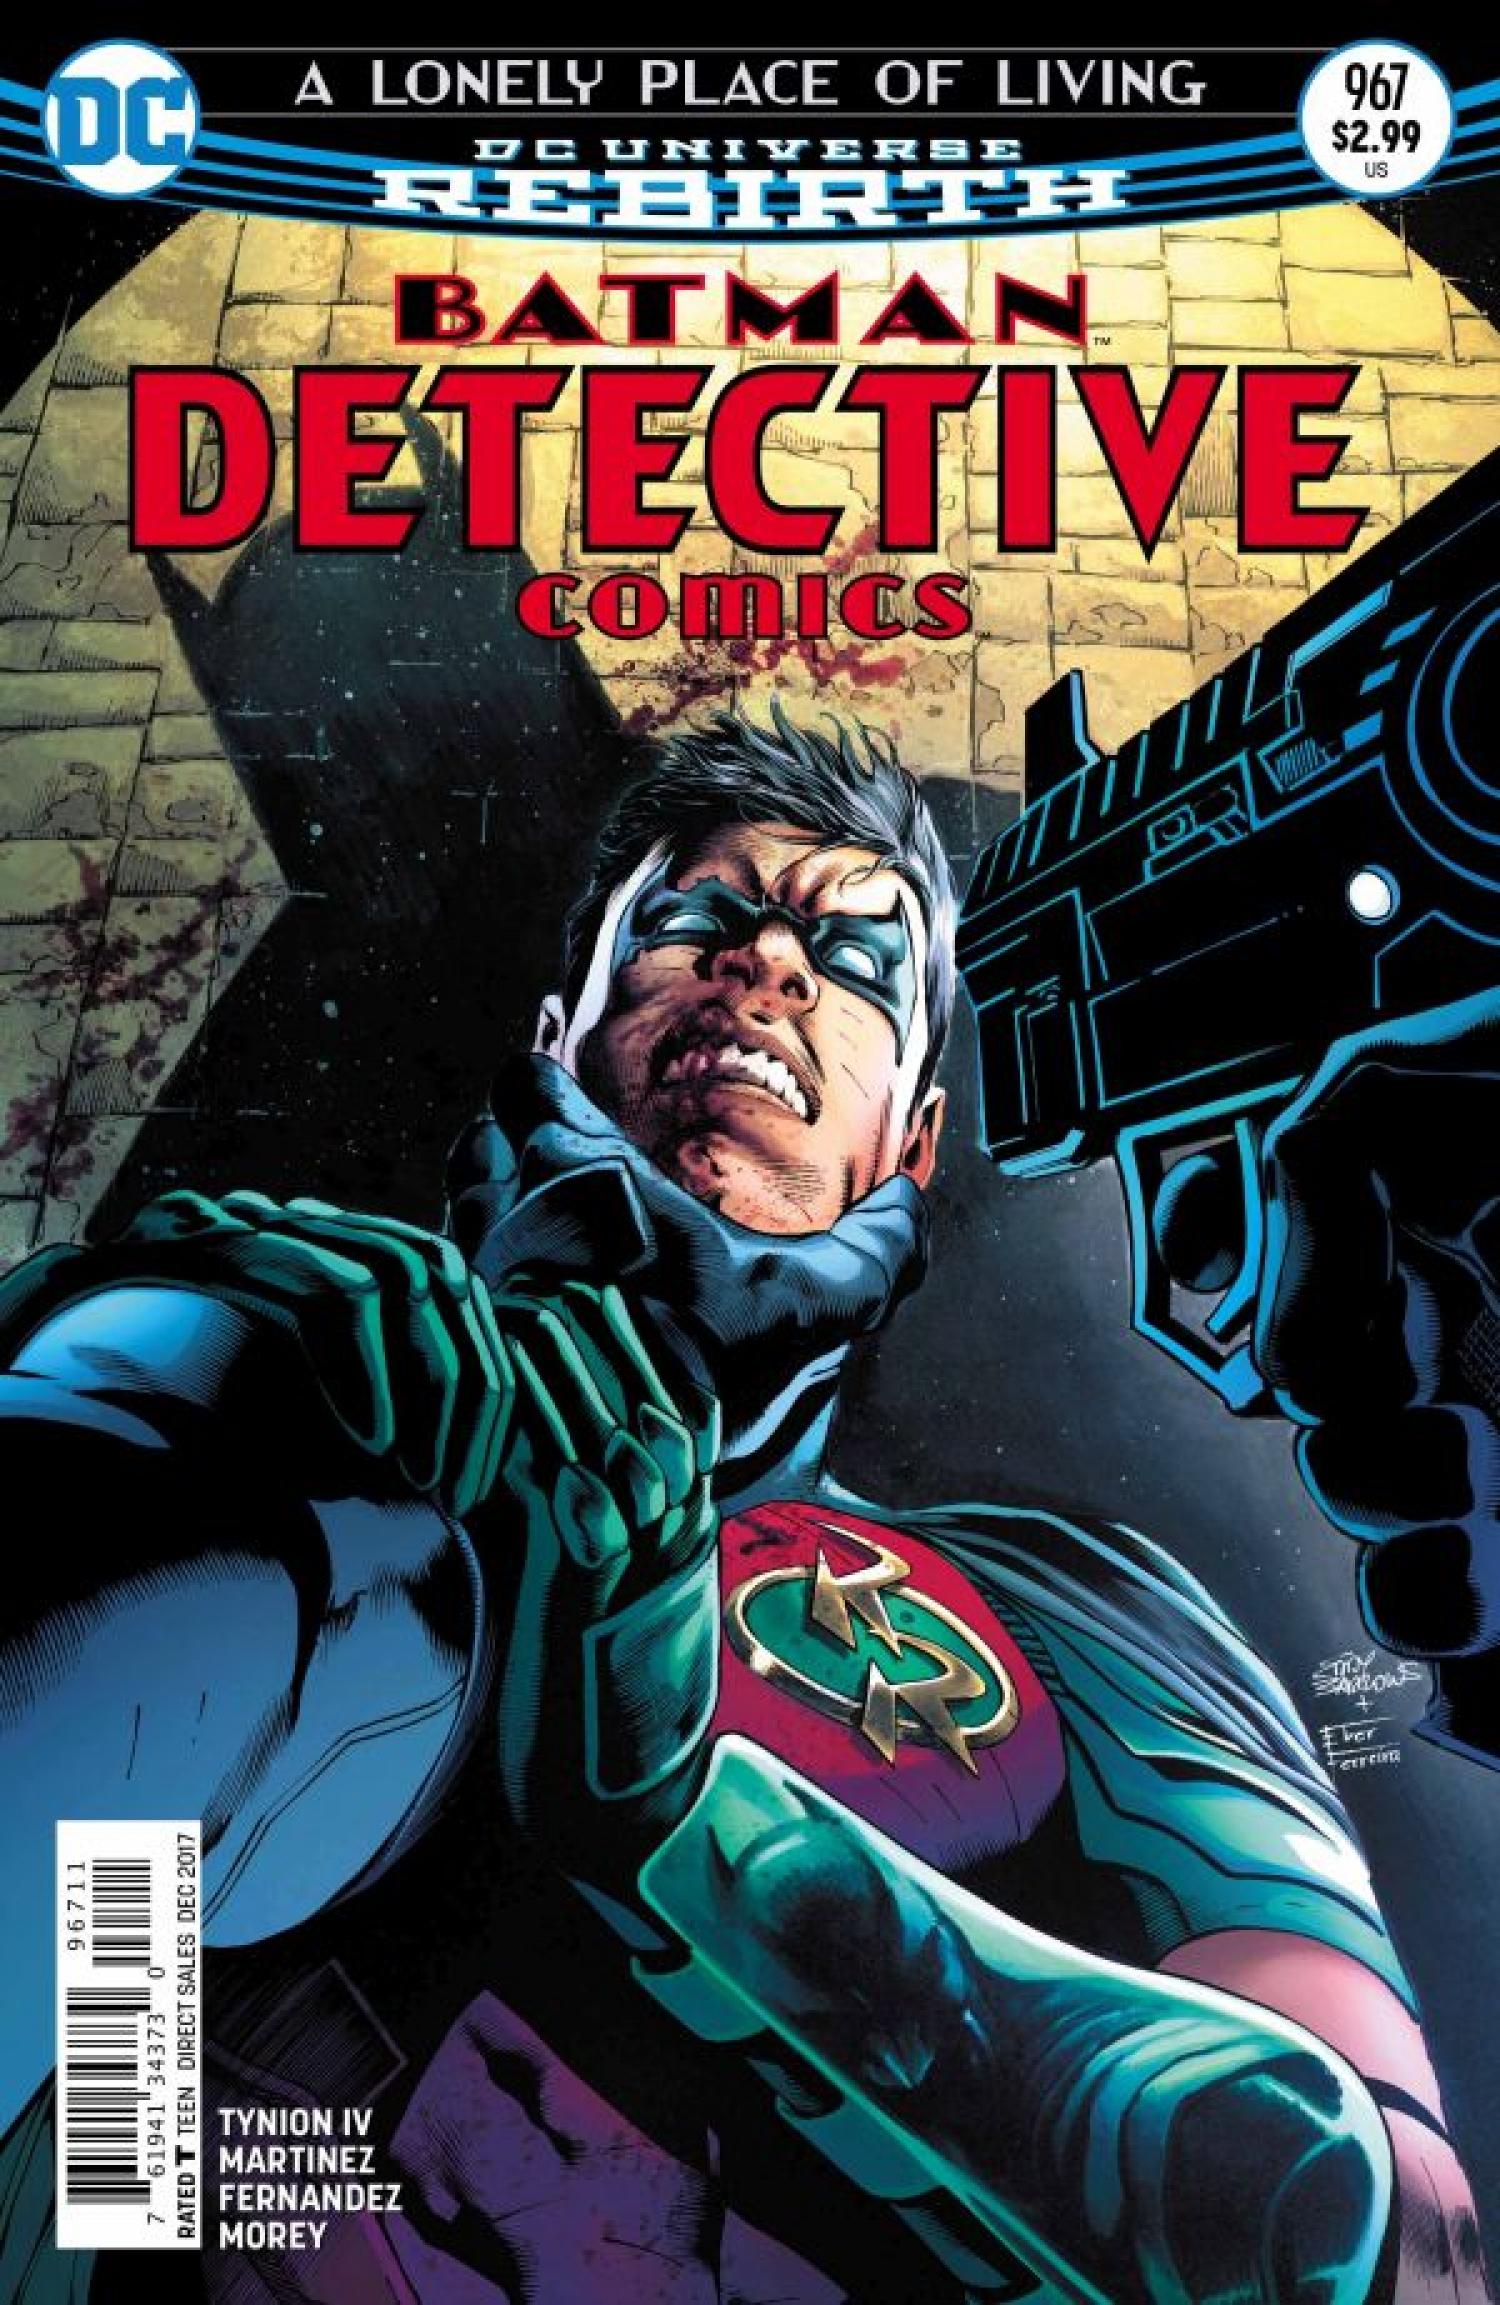 Detective Comics Vol. 1 #967